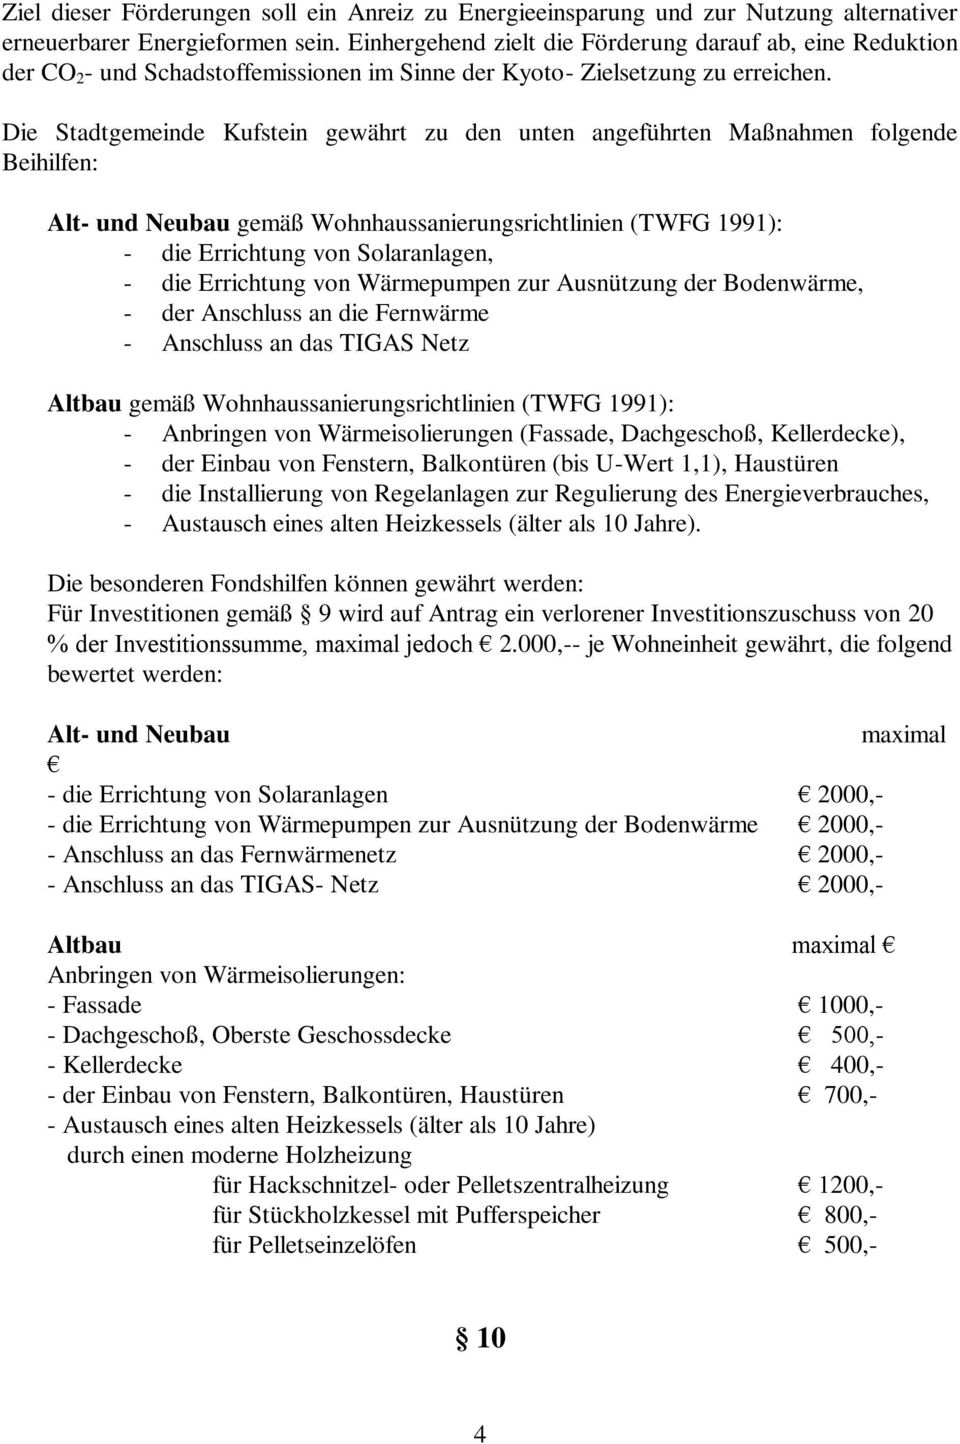 Die Stadtgemeinde Kufstein gewährt zu den unten angeführten Maßnahmen folgende Beihilfen: Alt- und Neubau gemäß Wohnhaussanierungsrichtlinien (TWFG 1991): - die Errichtung von Solaranlagen, - die